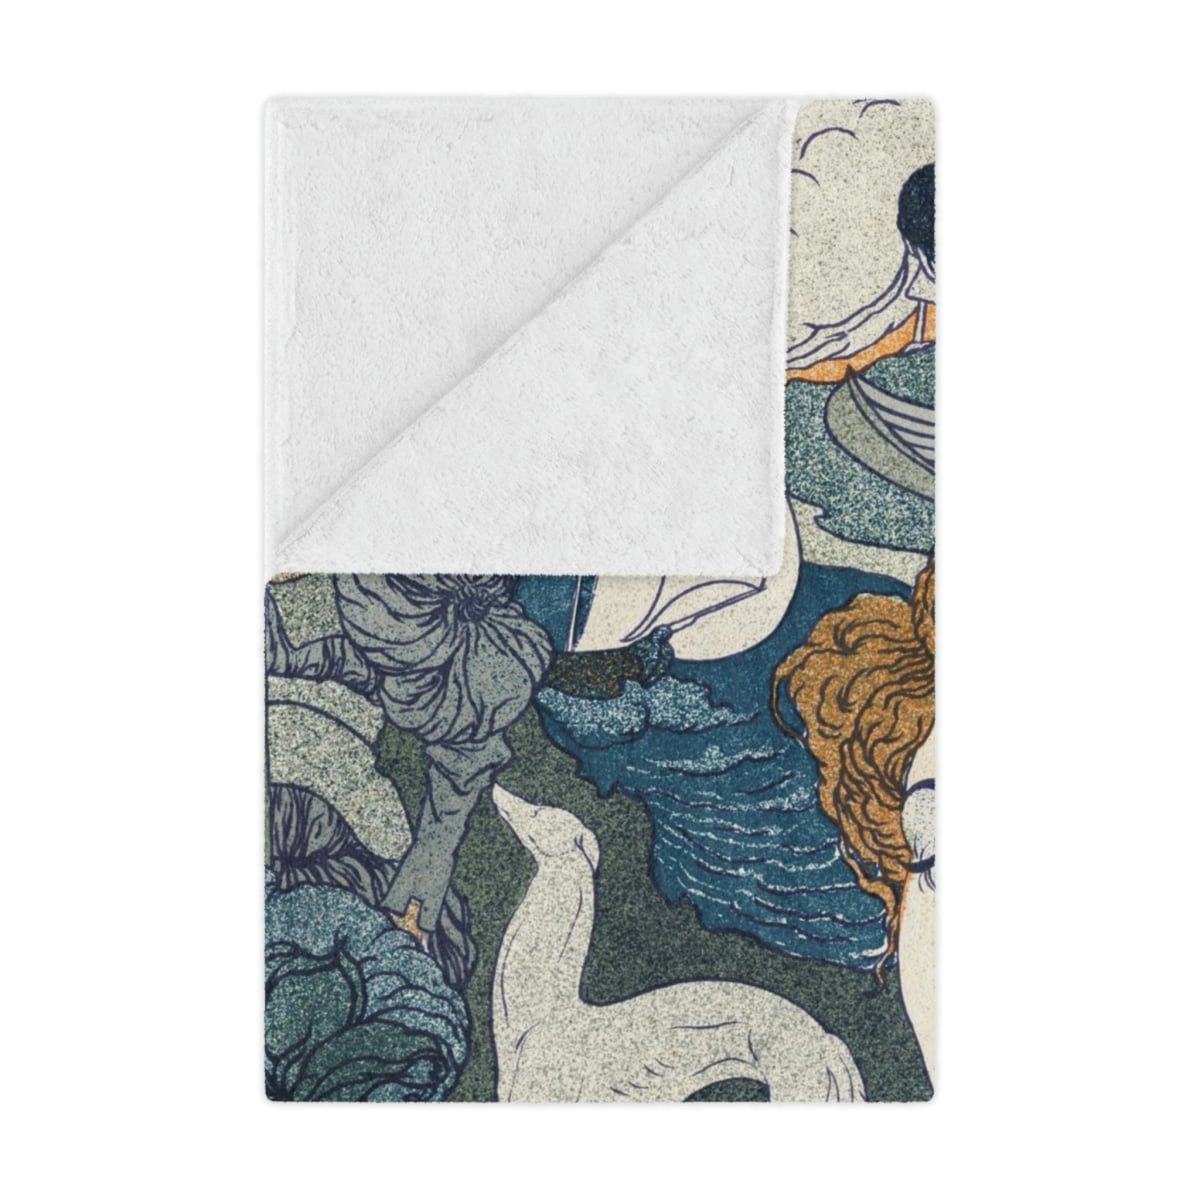 Retour by Georges de Feure: Artistic Blankets for Cozy Elegance